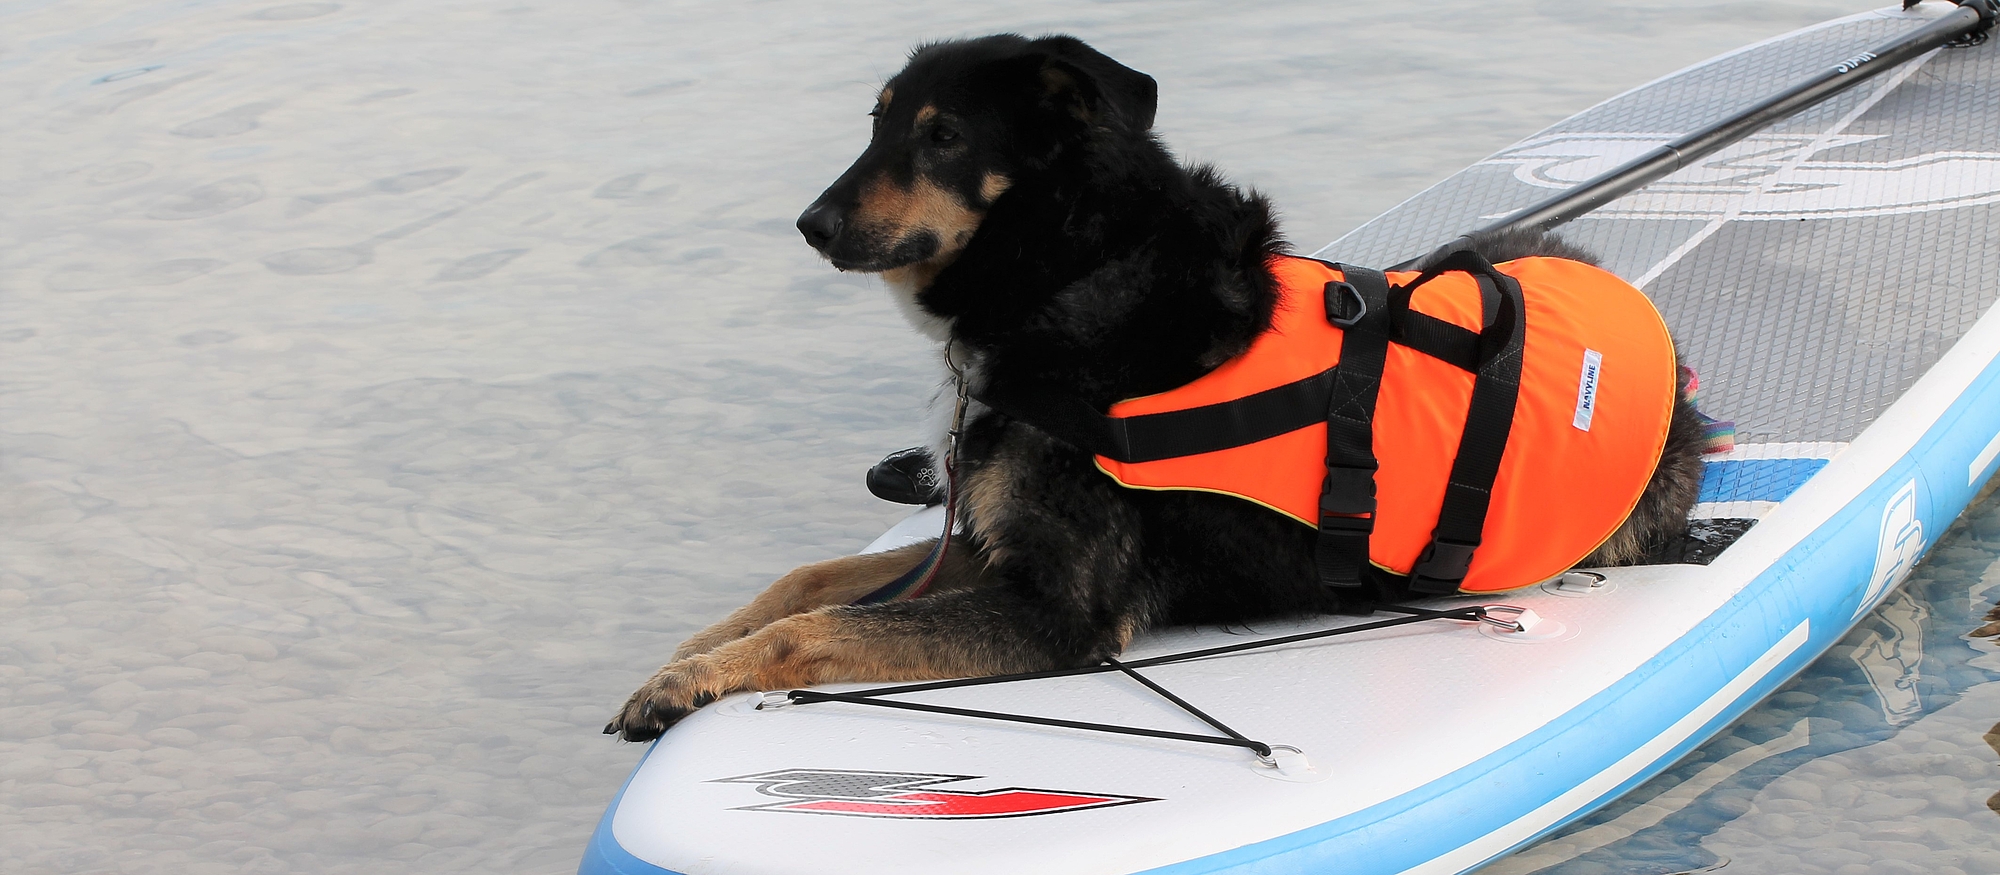 Bild zeigt einen Hund mit Schwimmweste liegend auf einen StandUpPaddle im Wasser